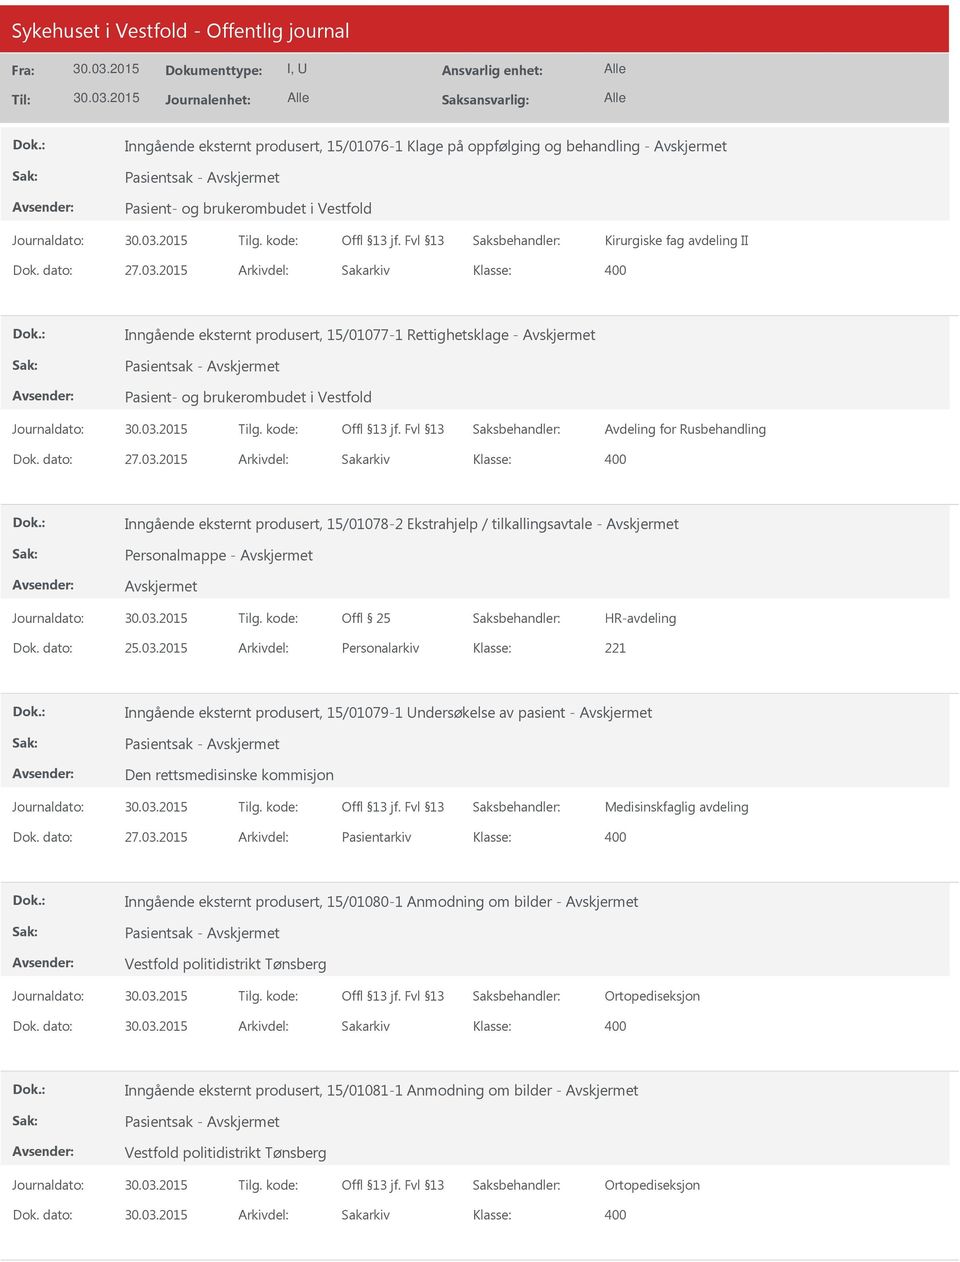 2015 Arkivdel: Sakarkiv Inngående eksternt produsert, 15/01078-2 Ekstrahjelp / tilkallingsavtale - Personalmappe - HR-avdeling Dok. dato: 25.03.